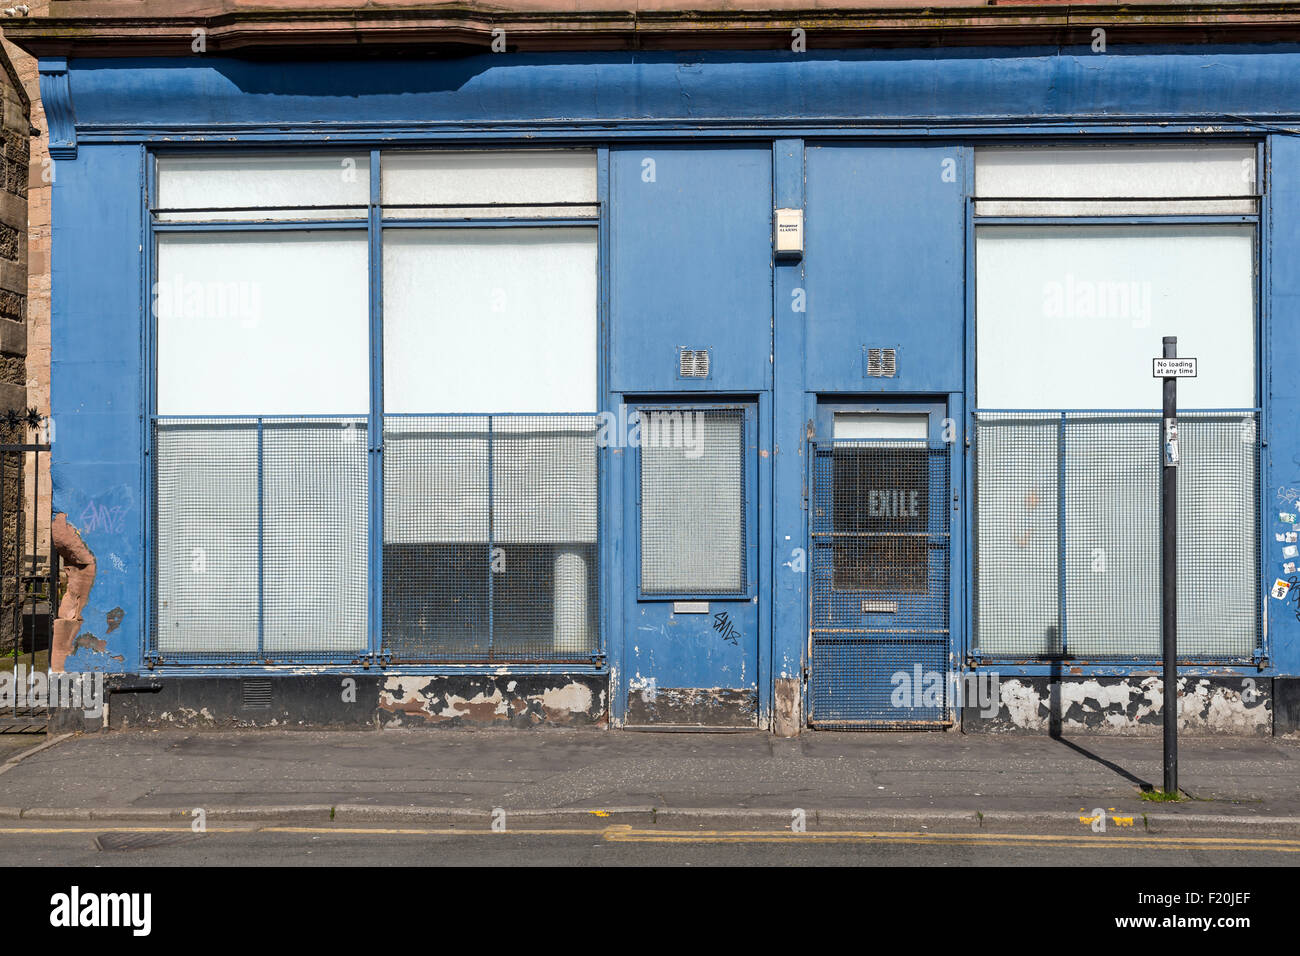 Un centro comercial cerrado y deteriorado, Reino Unido Foto de stock